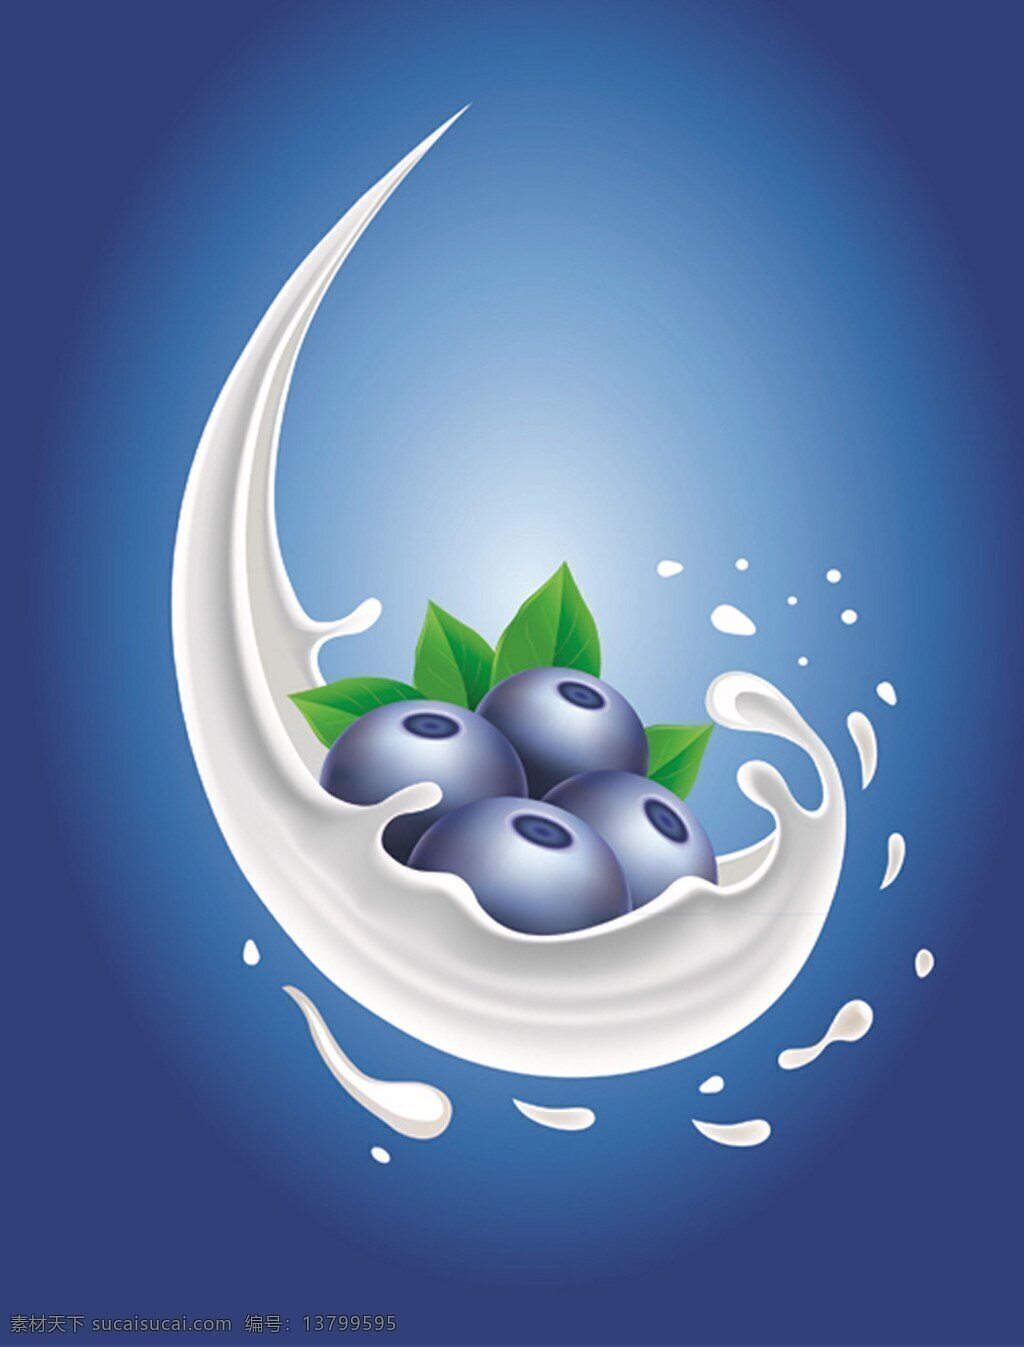 蓝莓 牛奶 广告 背景 水果 蓝色背景 广告背景